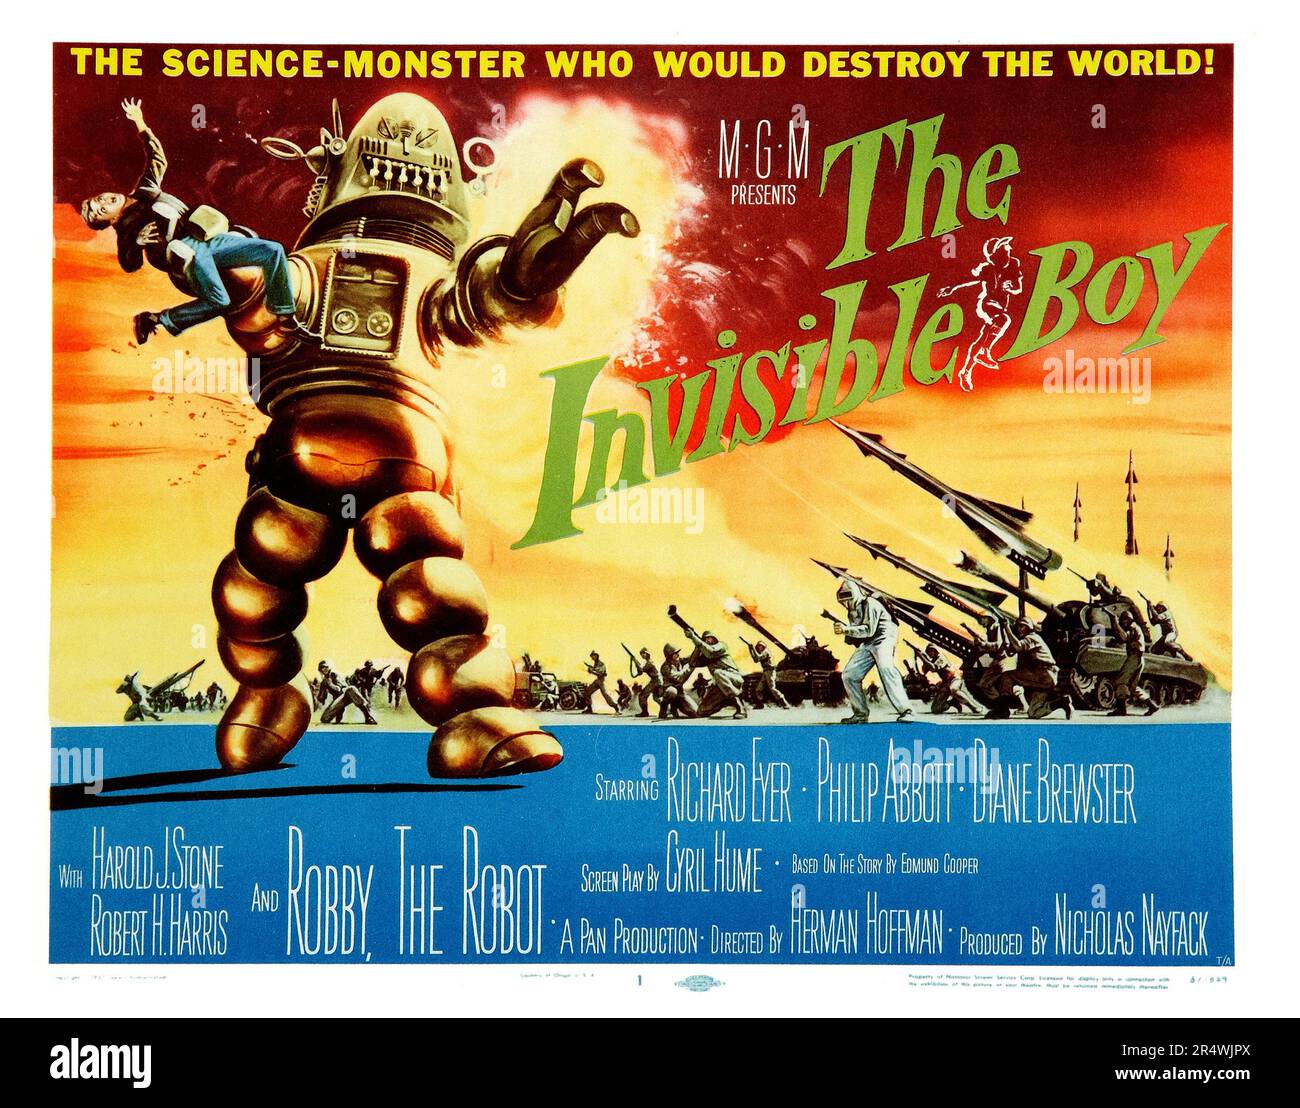 Le garçon invisible, 1957, est un film de science fiction, réalisé par Herman Hoffman, et avec Richard Eyer et Philip Abbott. C'est le deuxième aspect du film de Robby le Robot, le personnage de science-fiction qui "tole le show' dans Planète interdite (1956). Le titre a été précédemment du film S.O.S. vaisseau spatial. Banque D'Images